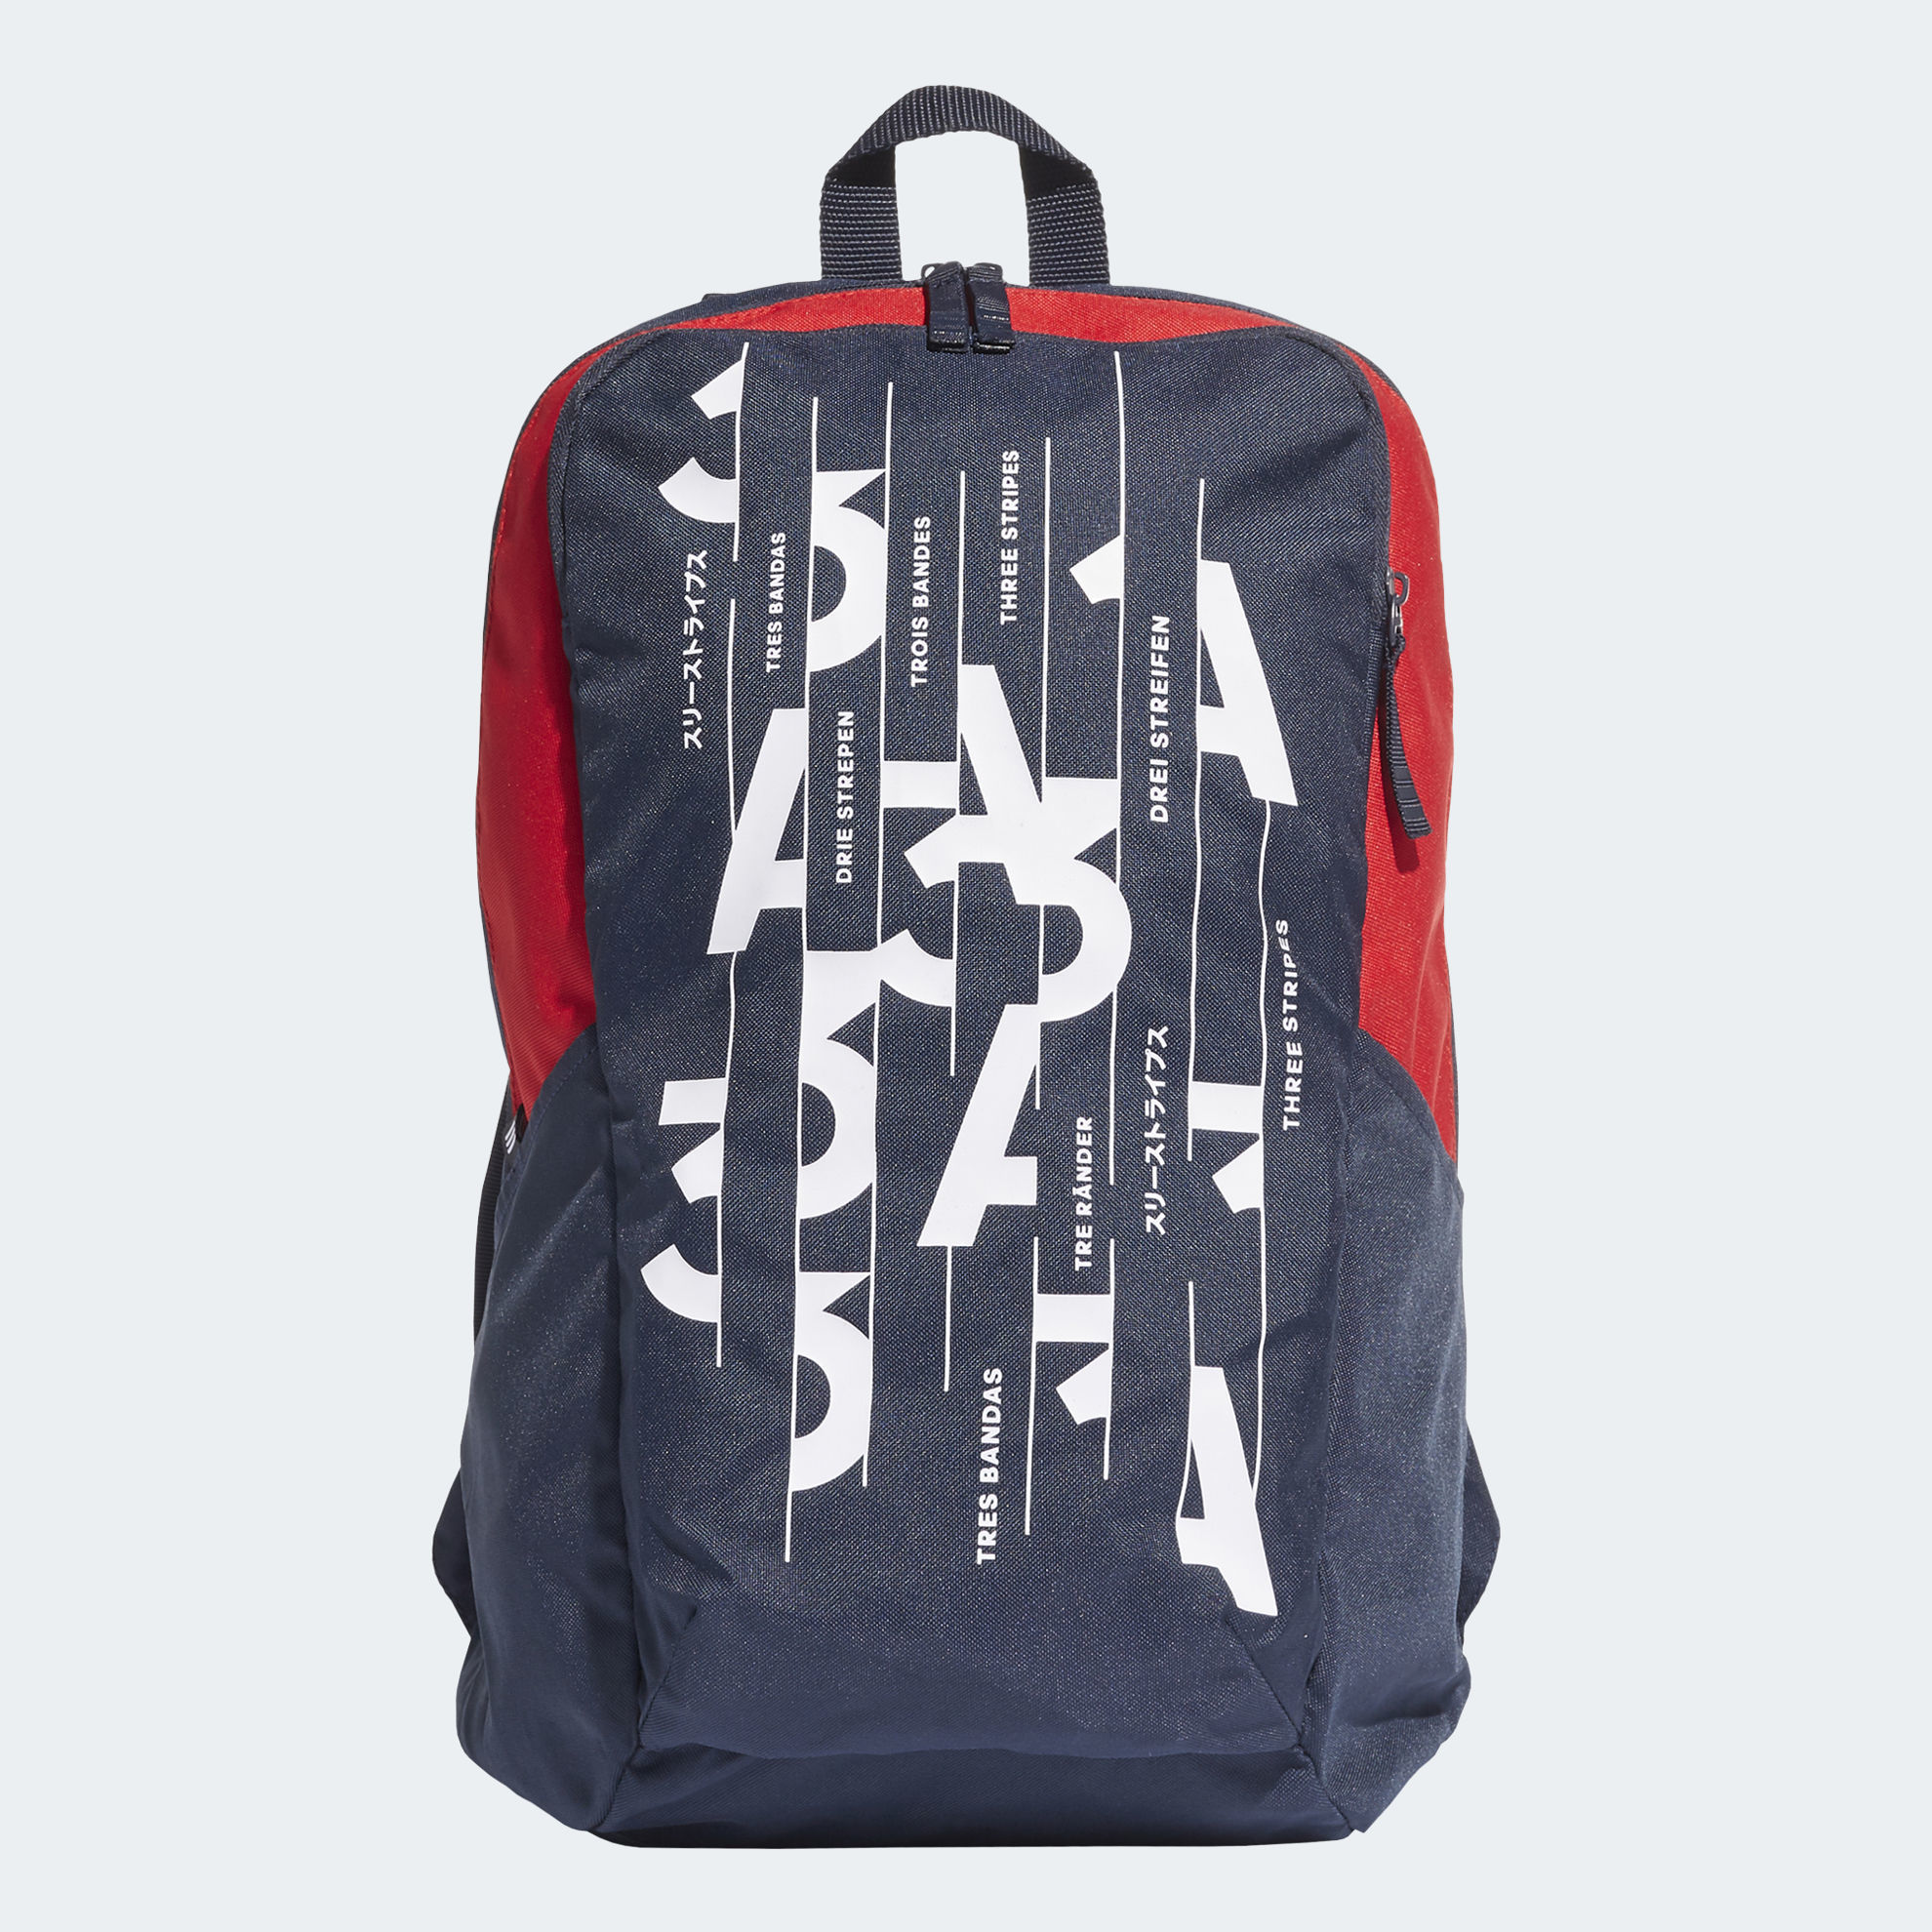 parkhood backpack